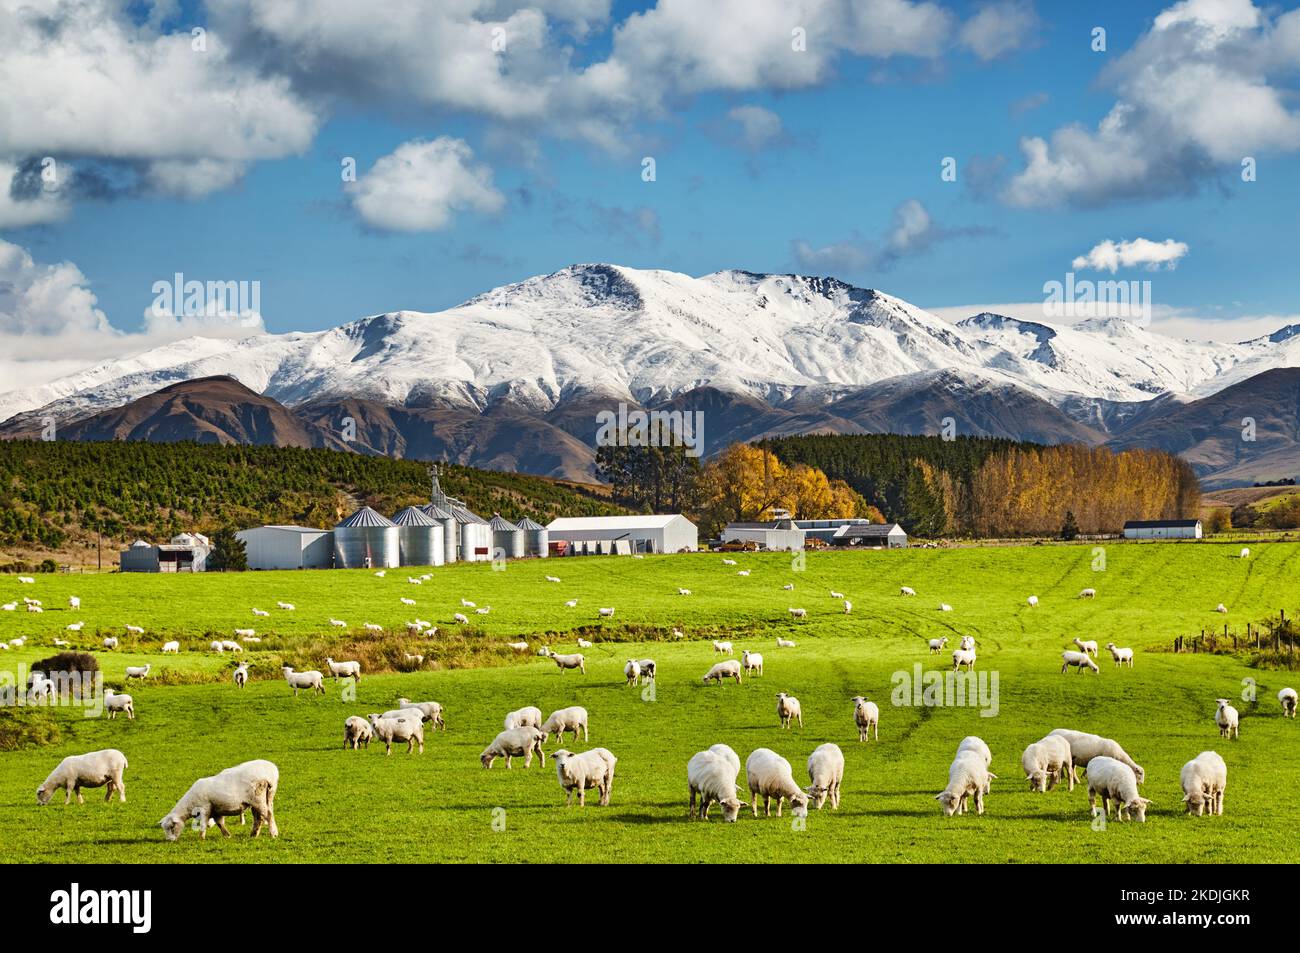 Paysage avec des montagnes enneigées et un champ vert avec des moutons paître et une usine de transformation agro-alimentaire, Île du Sud, Nouvelle-Zélande Banque D'Images